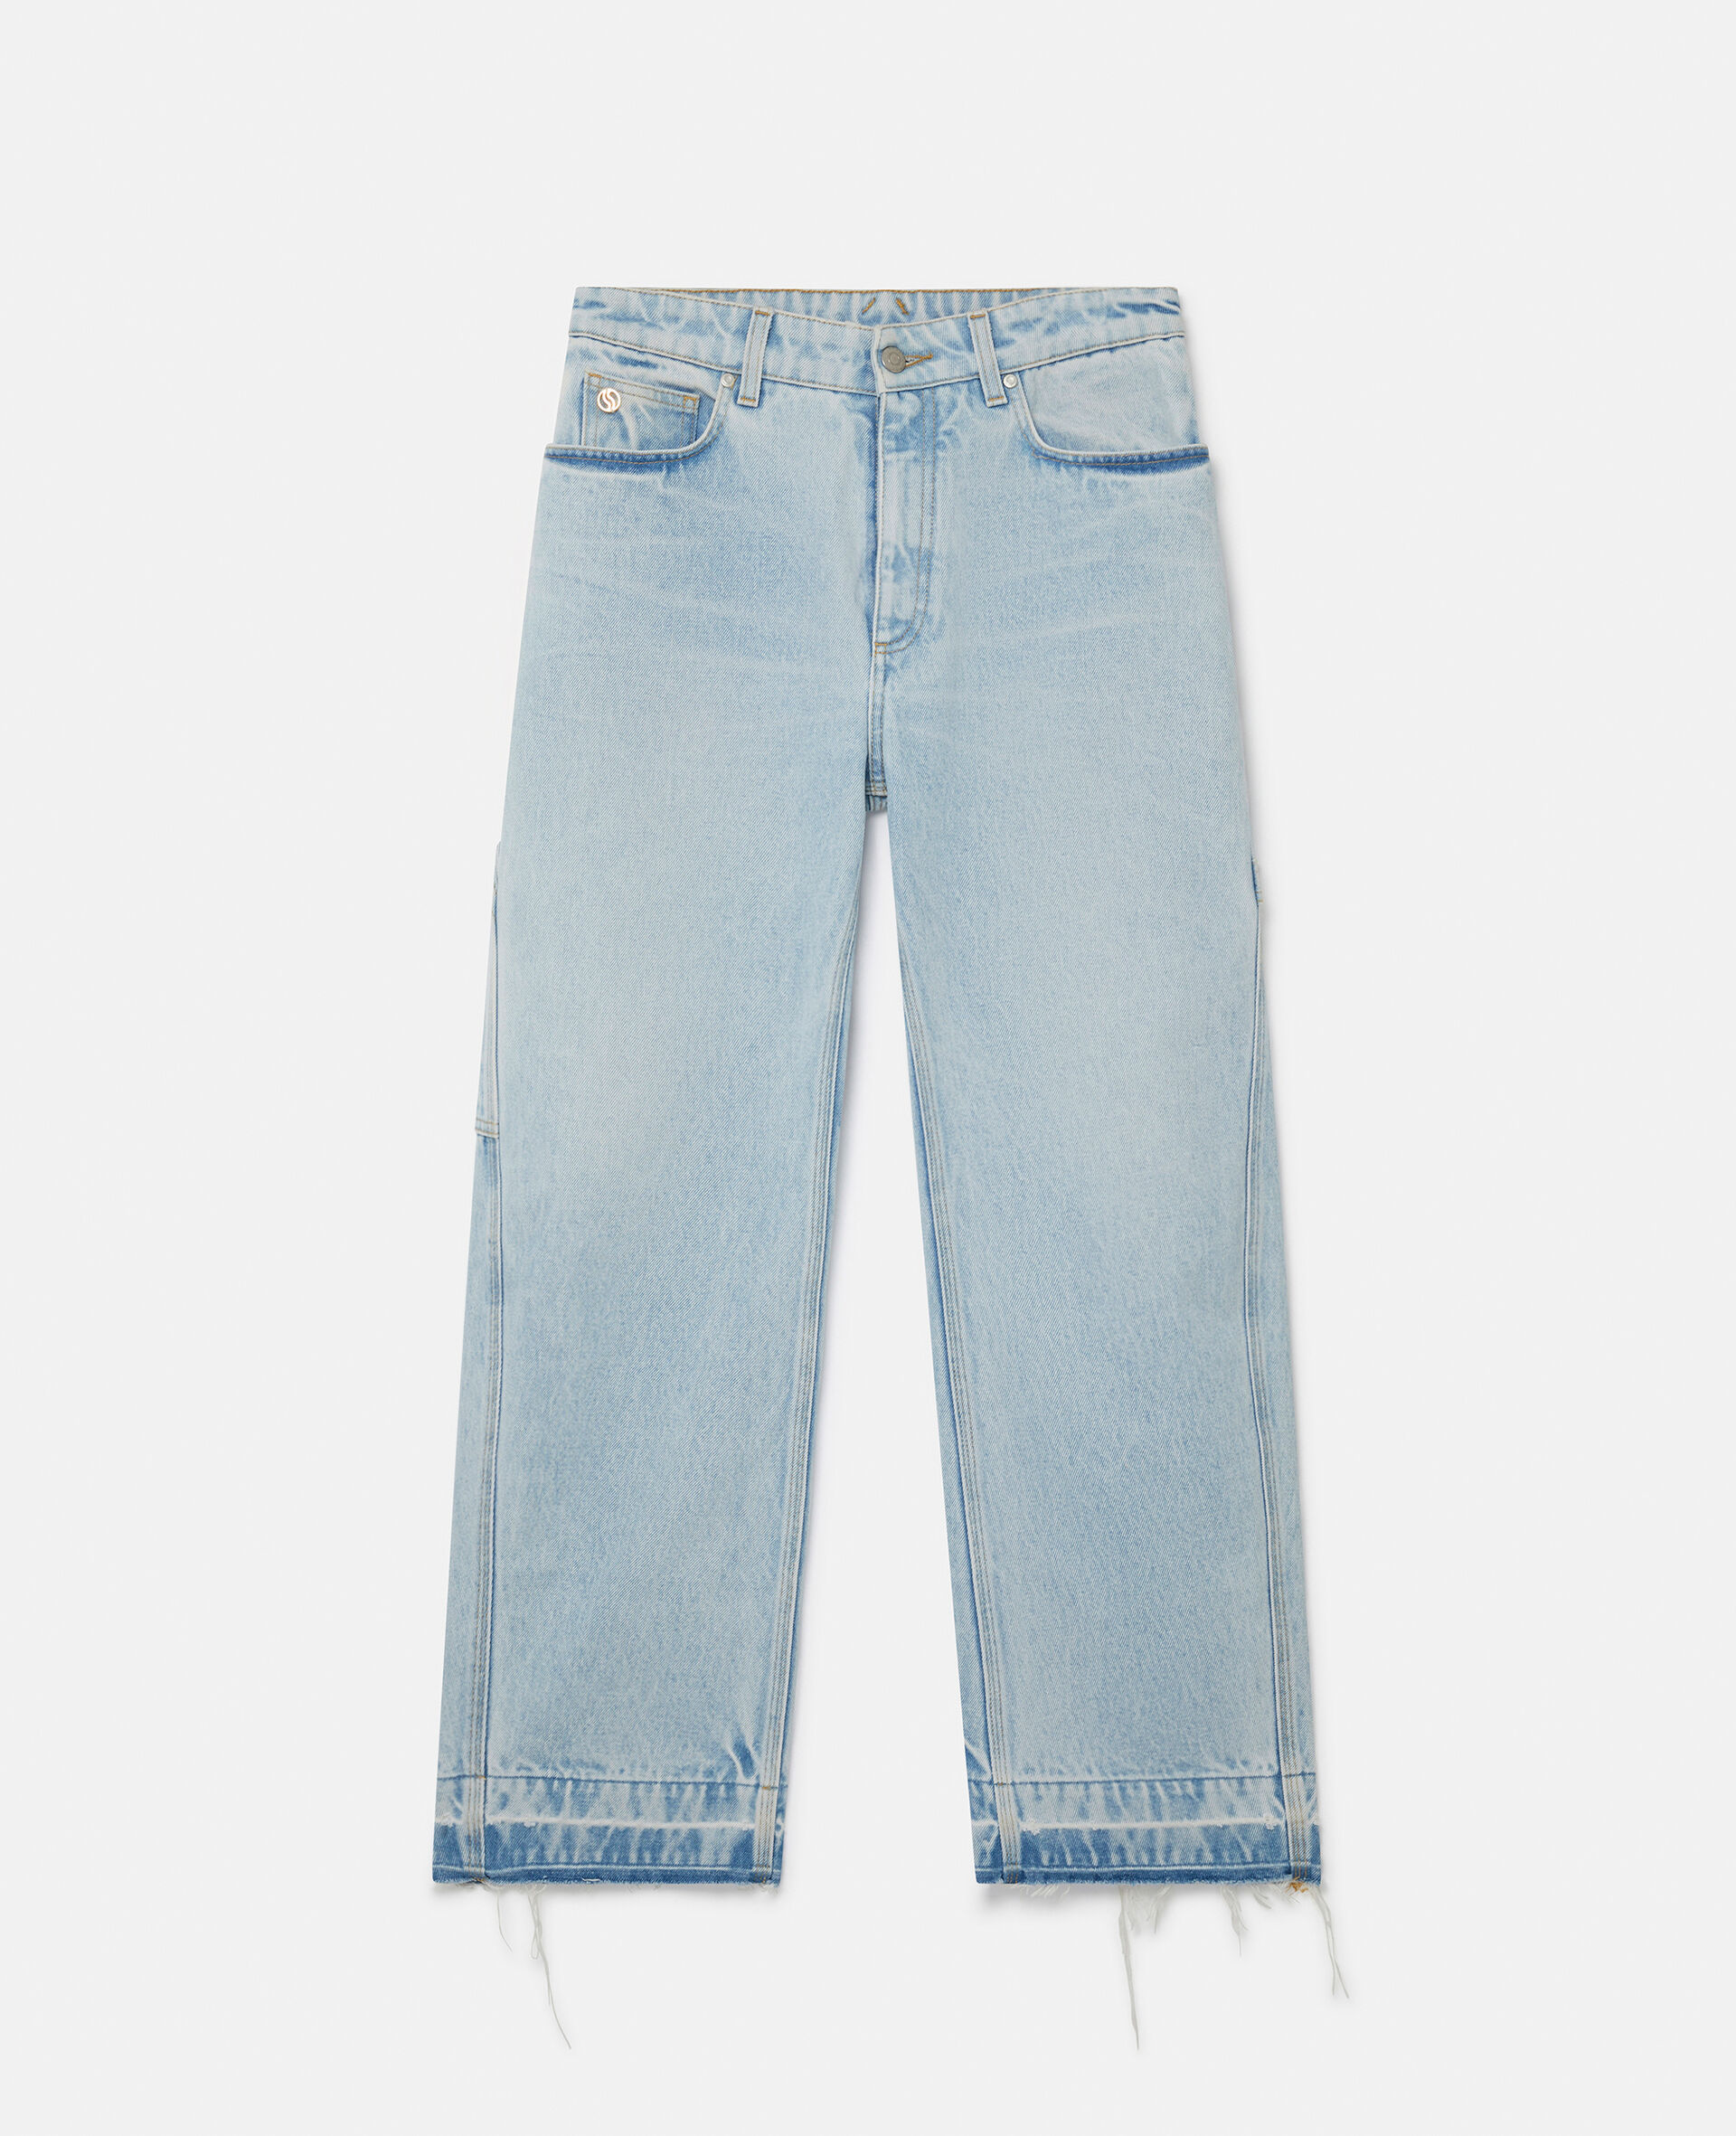 Jeanshose mit mittelhohem Bund und weitem Hosenbein-Blau-model